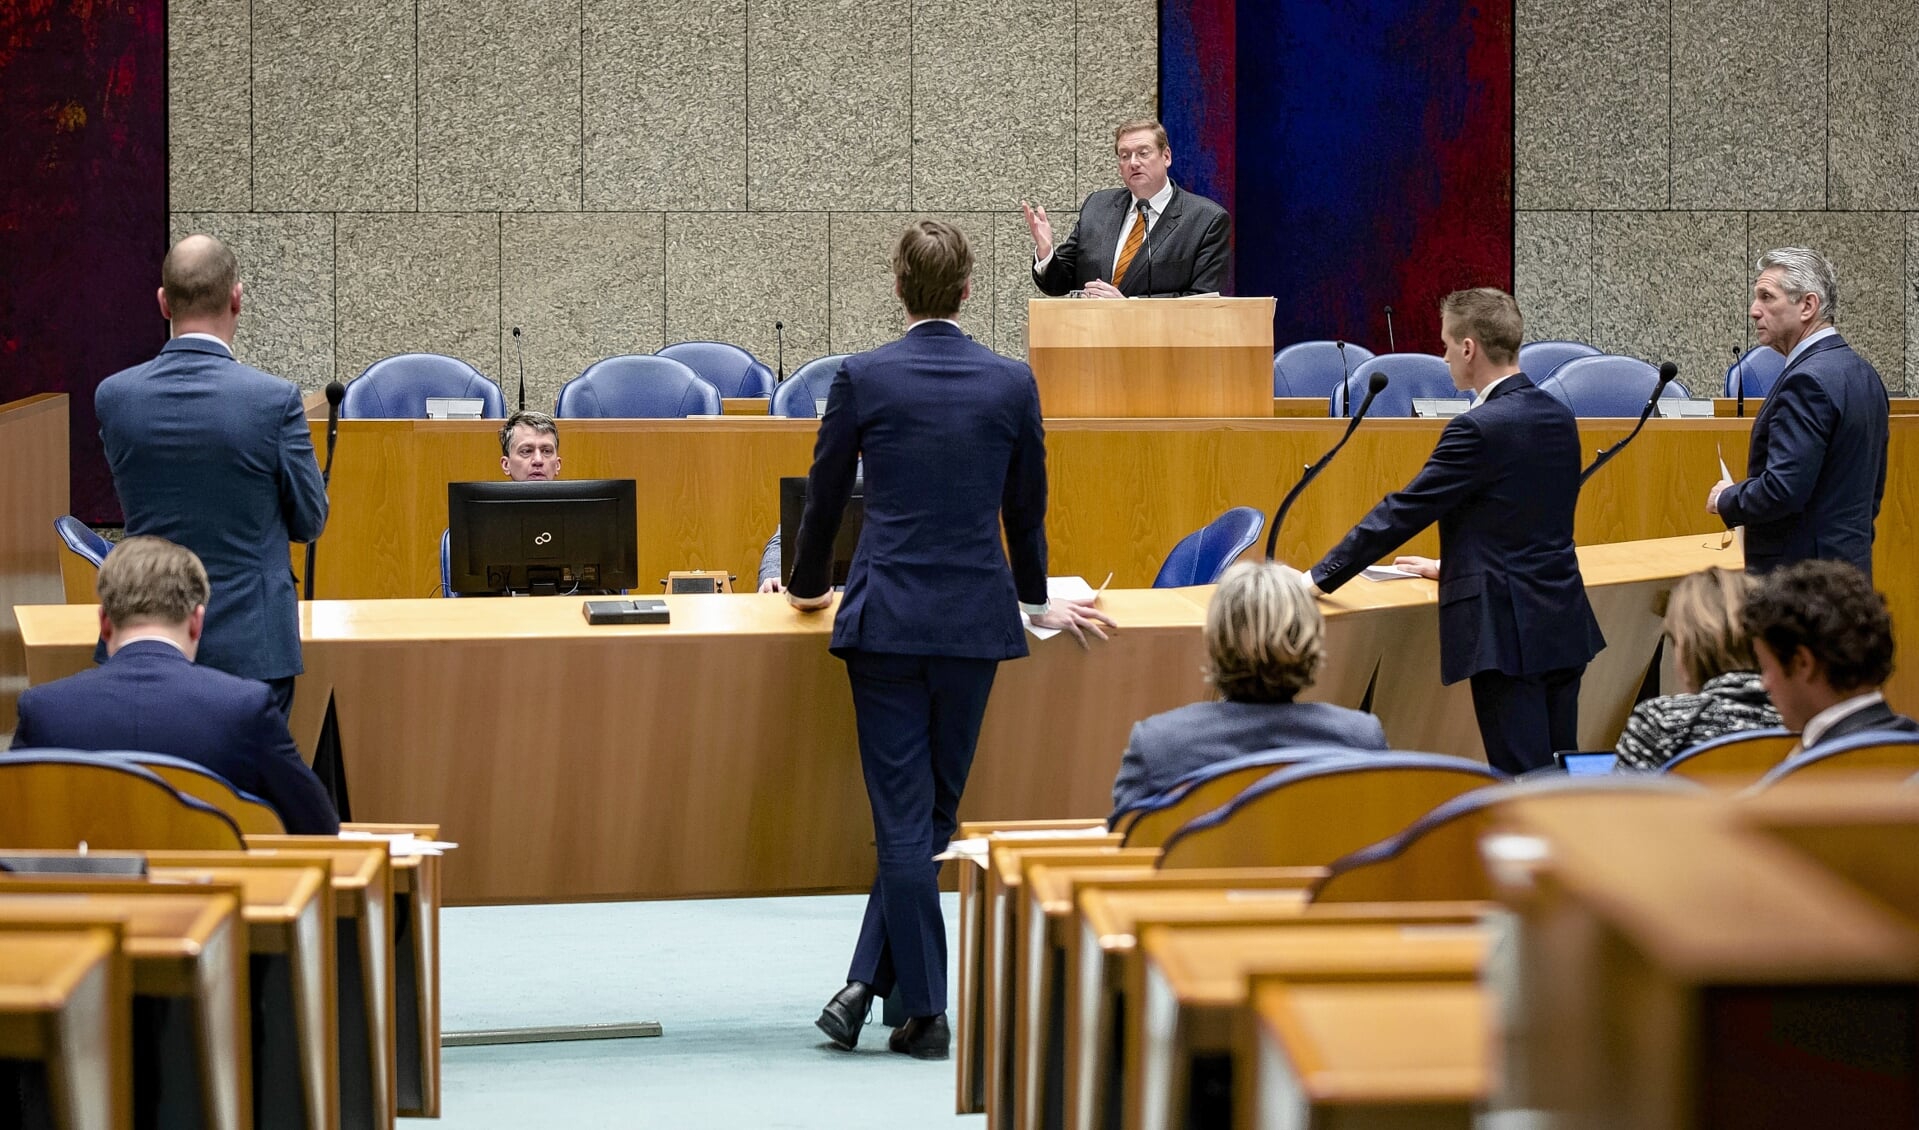 De Tweede Kamer tijdens een debat met interupties.